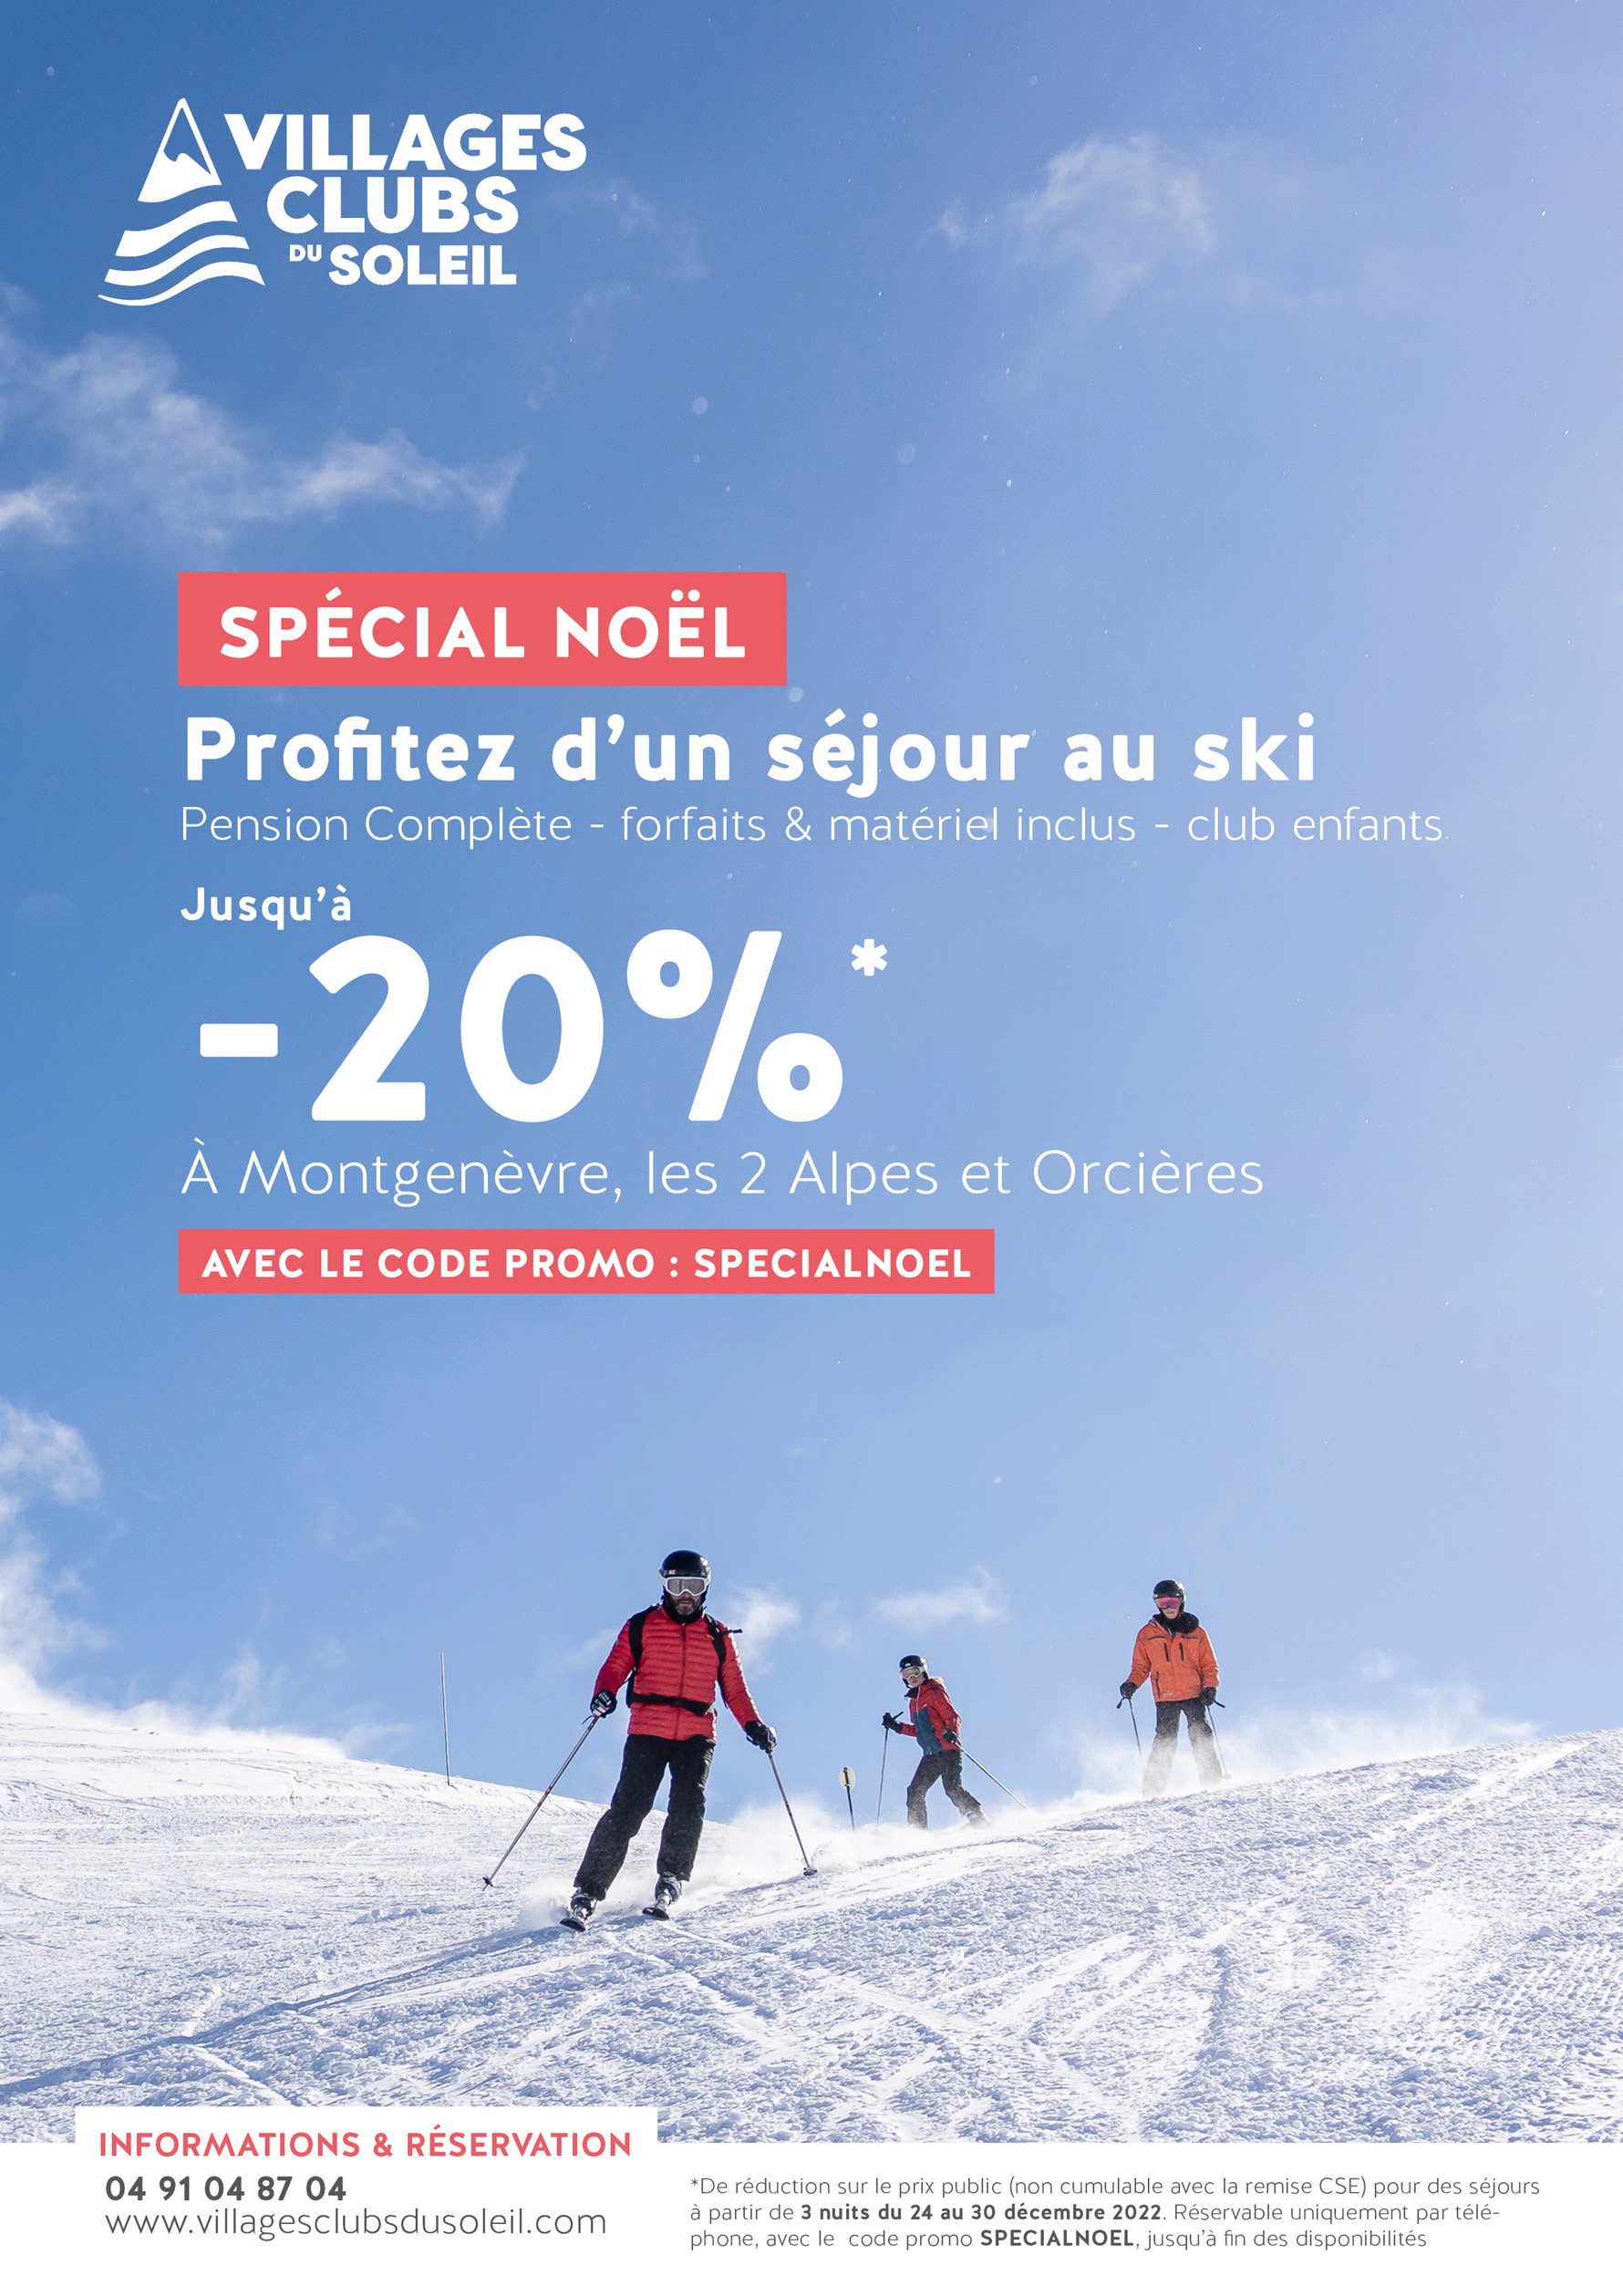 Villages Clubs du Soleil - 20 % de remise sur votre séjour au ski spécial noël